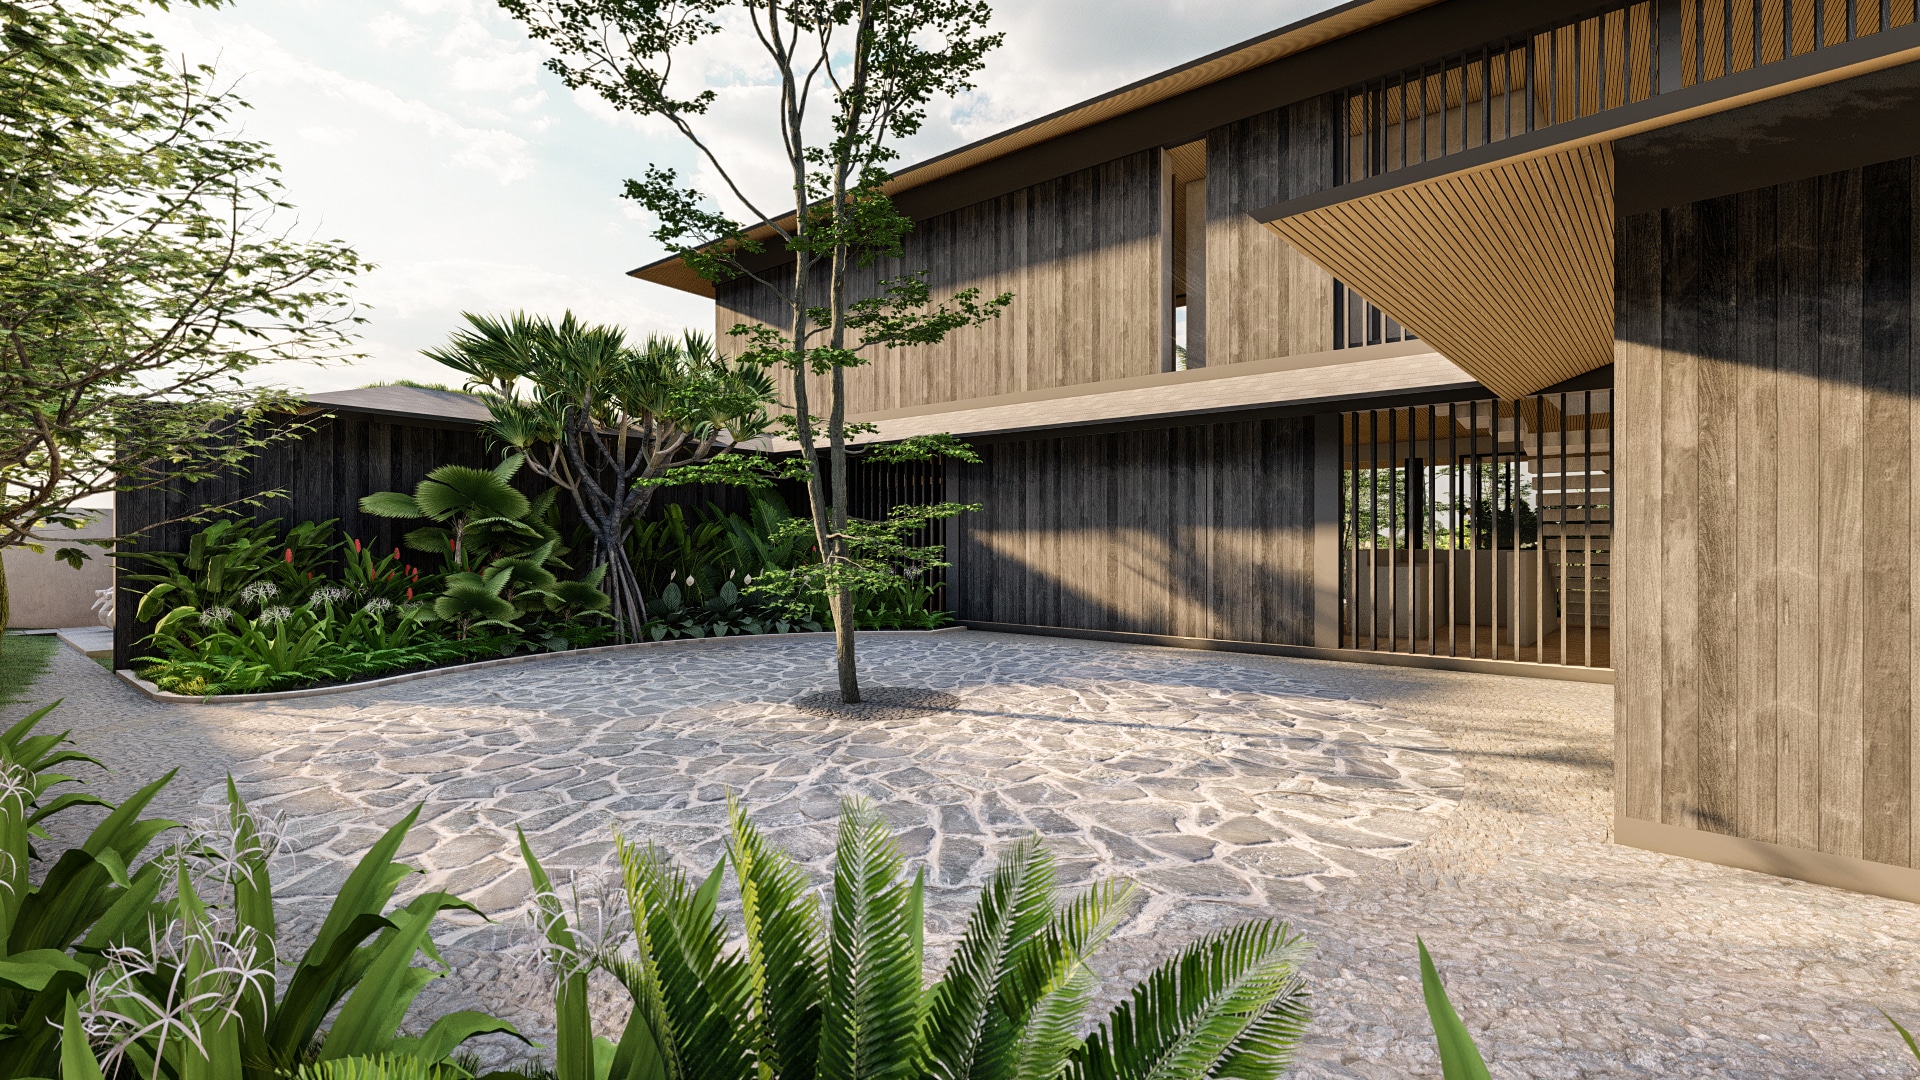 Design Assembly - Villa Shrey - Bali Architect - Interior Design - Bali Villa - Wooden Facade - Car Park